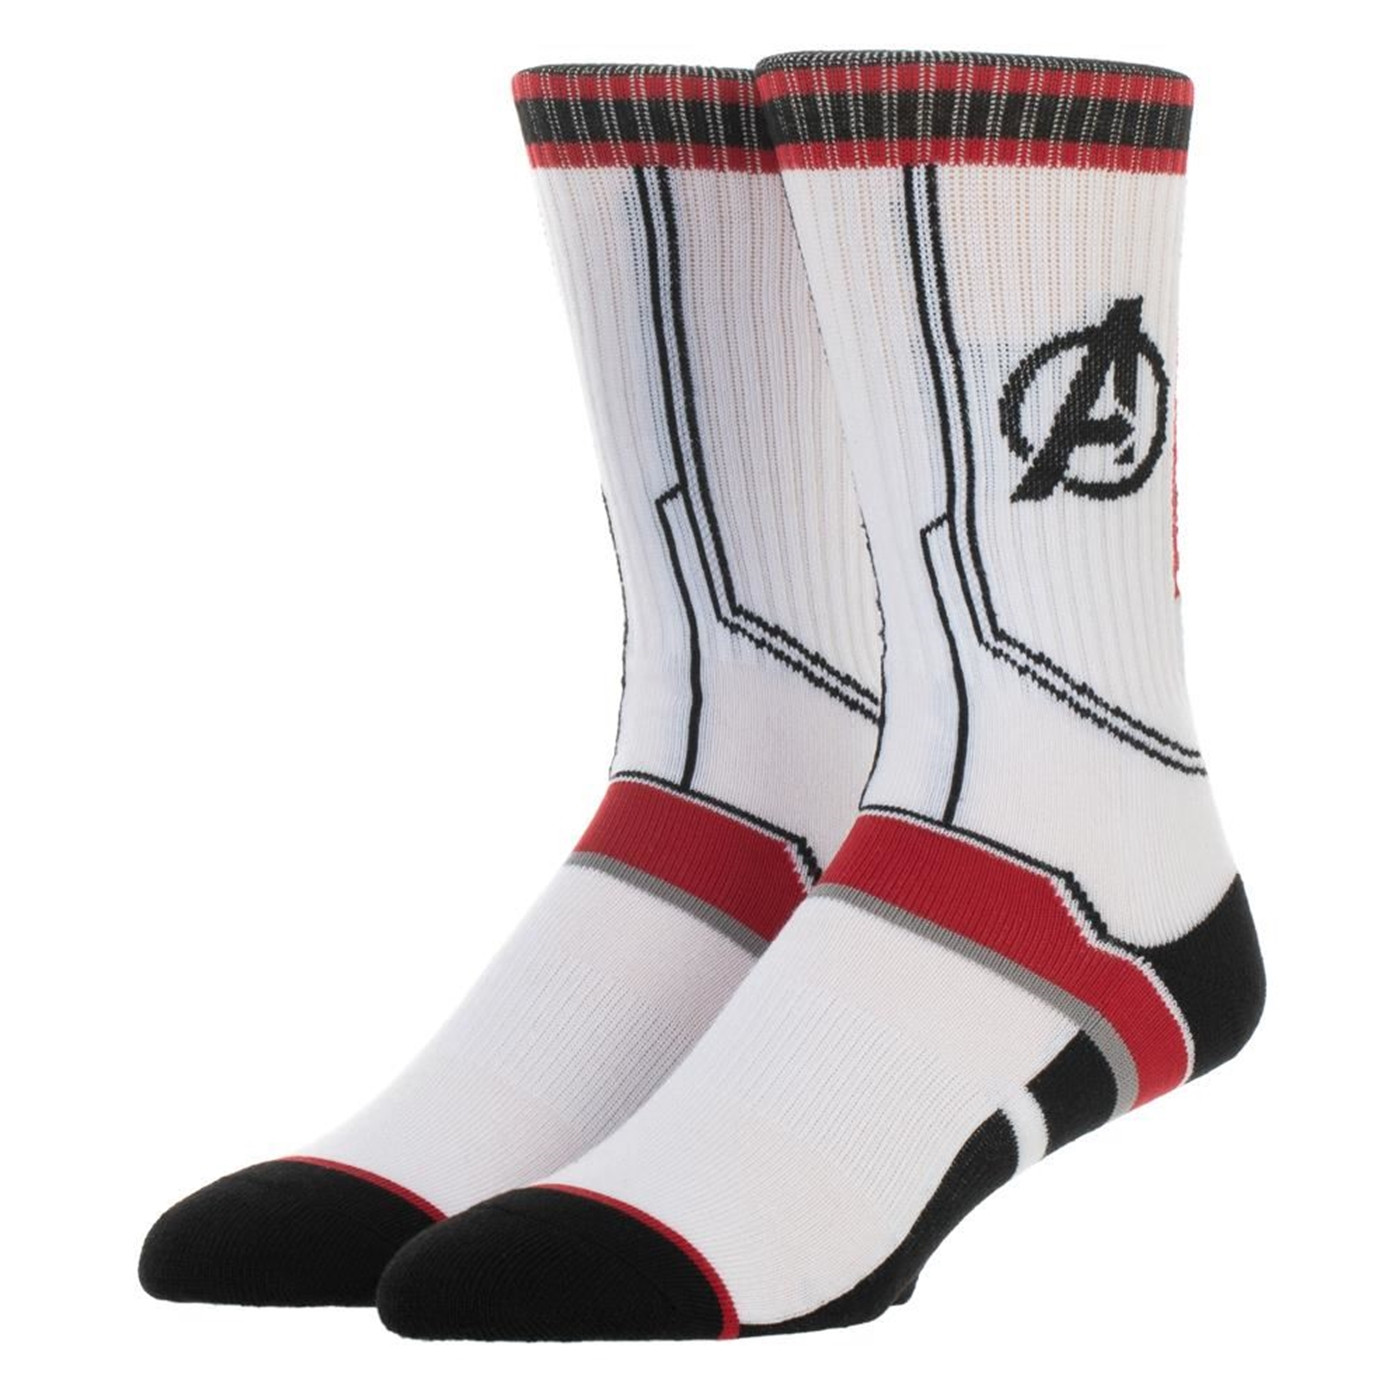 Avengers Endgame Quantum Armor Costume Socks